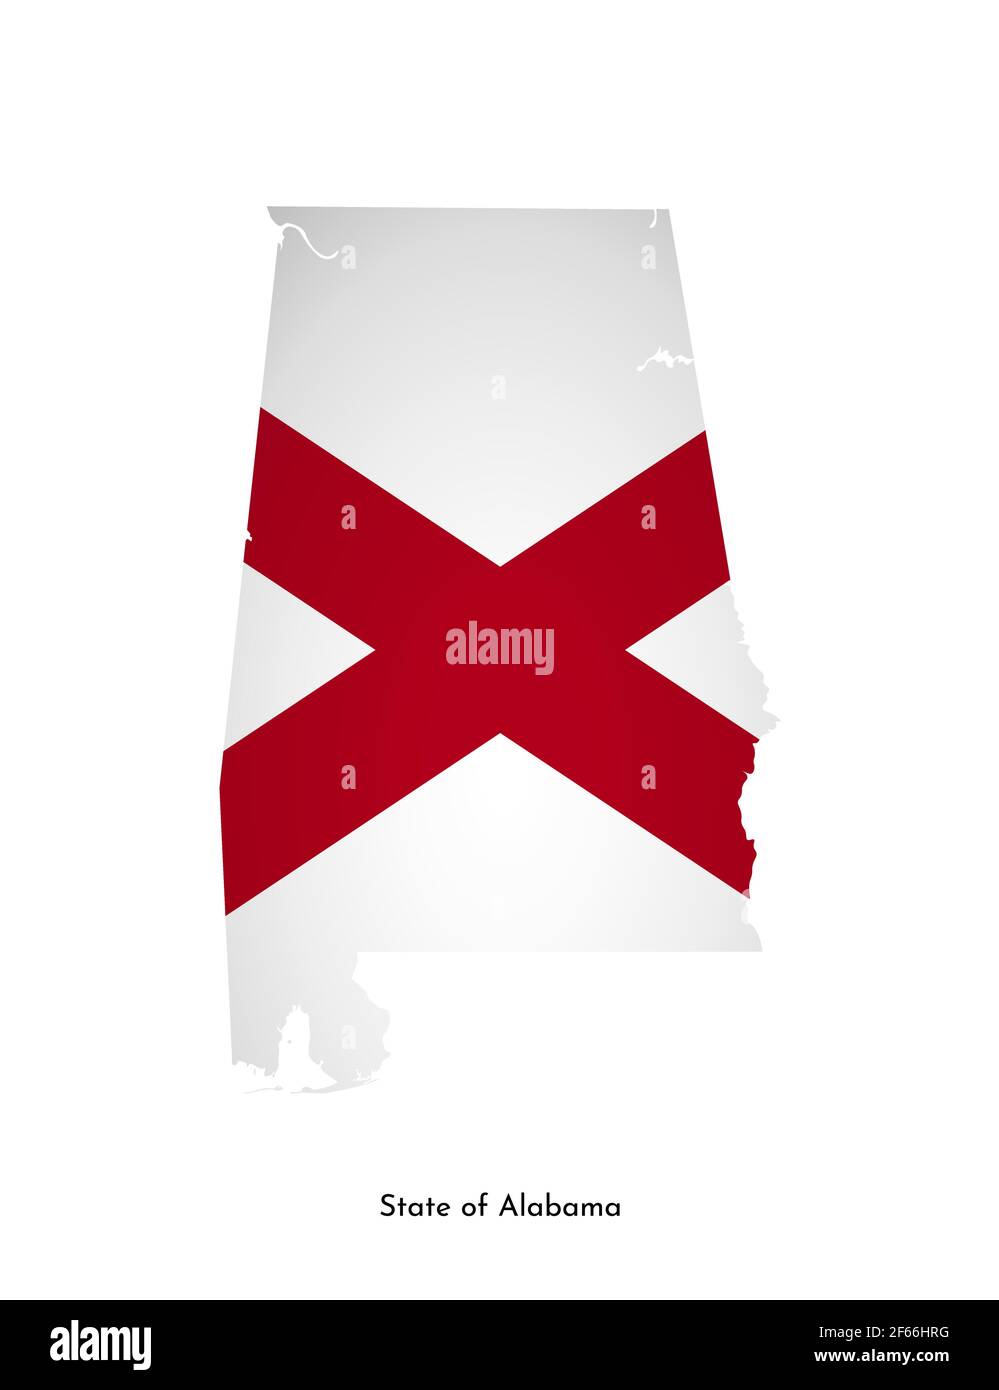 Illustration vectorielle isolée avec drapeau et carte simplifiée de l'Alabama (État des États-Unis). Ombre de volume sur la carte. Arrière-plan blanc Illustration de Vecteur